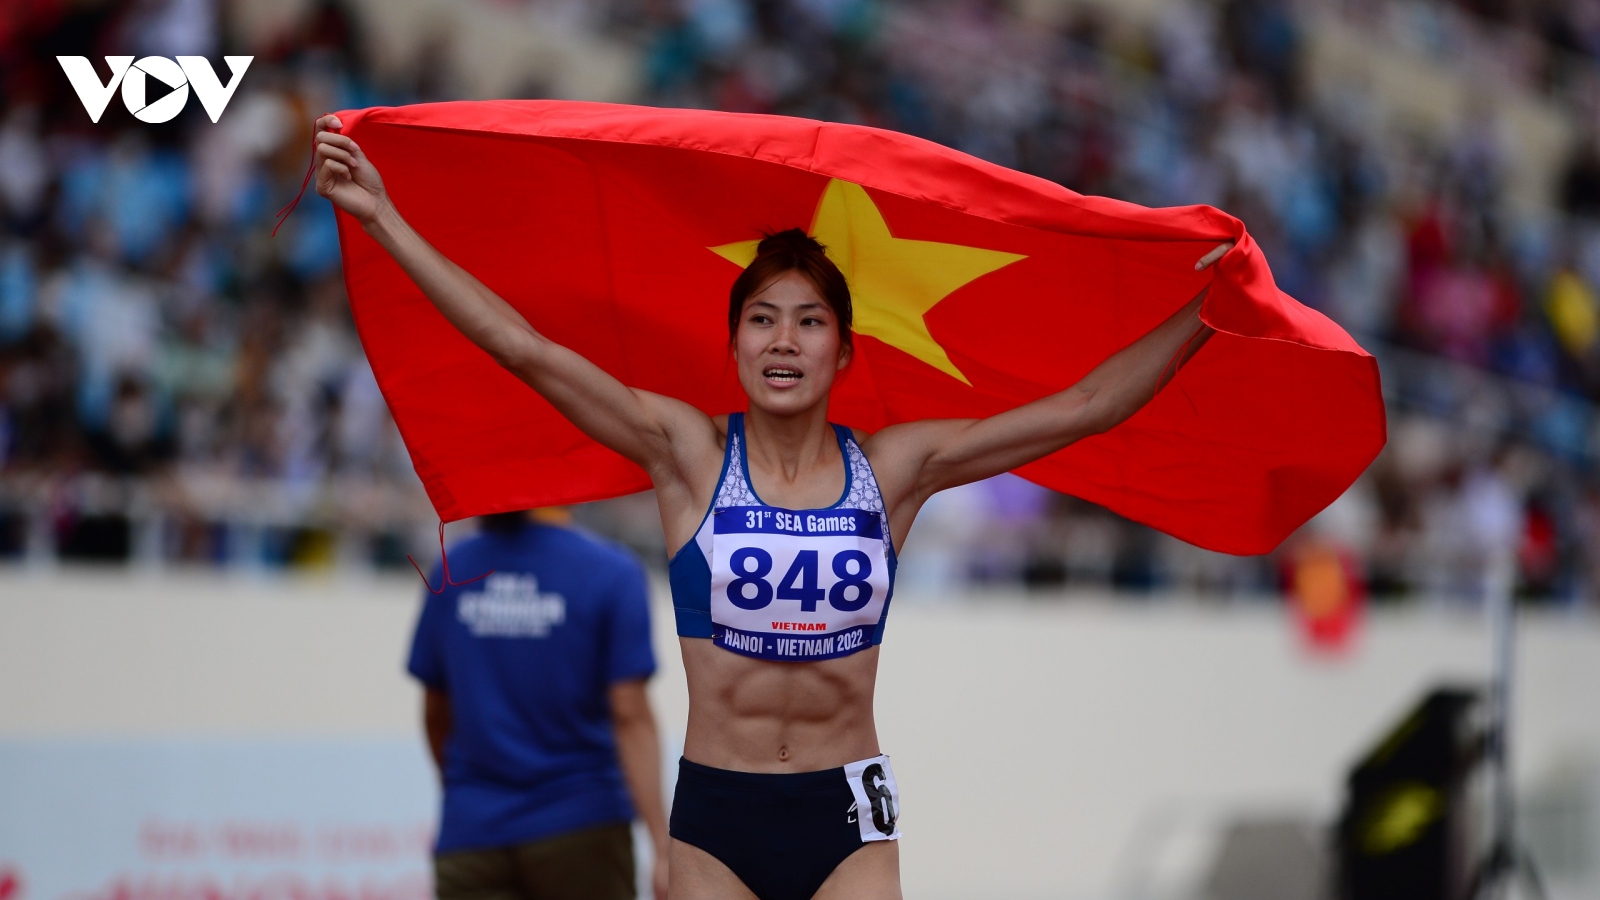 SEA Games 31 ngày 16/5: Bùi Thị Nguyên xuất sắc giành HCV 100m rào nữ